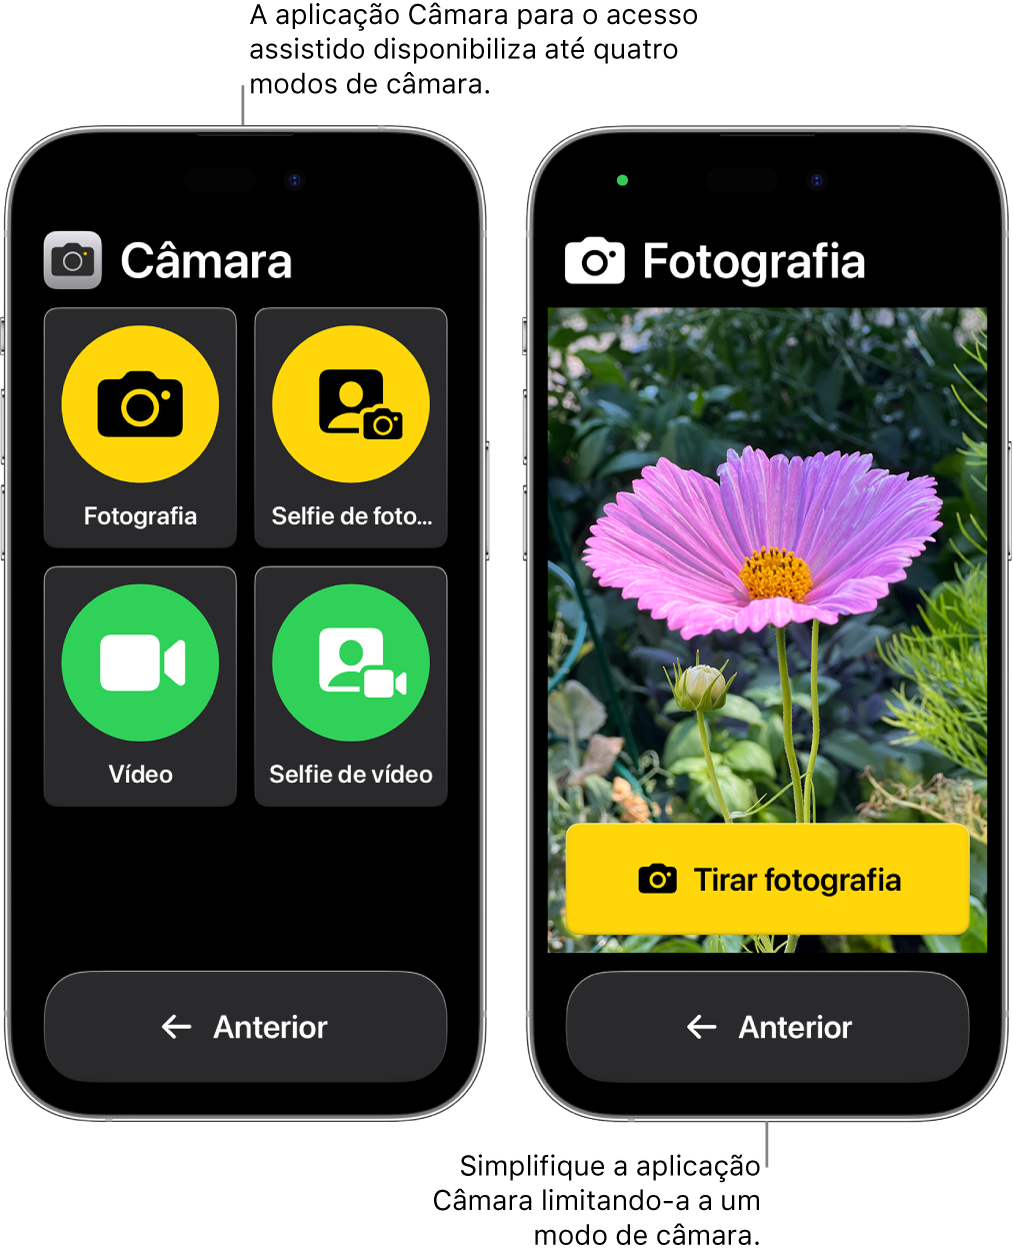 Dois iPhones no Acesso assistido. Um iPhone mostra a aplicação Câmara com modos de câmara para o utilizador escolher, como “Vídeo” ou “Selfie de fotografia”. O outro iPhone mostra a aplicação Câmara com um único modo para tirar fotografias.